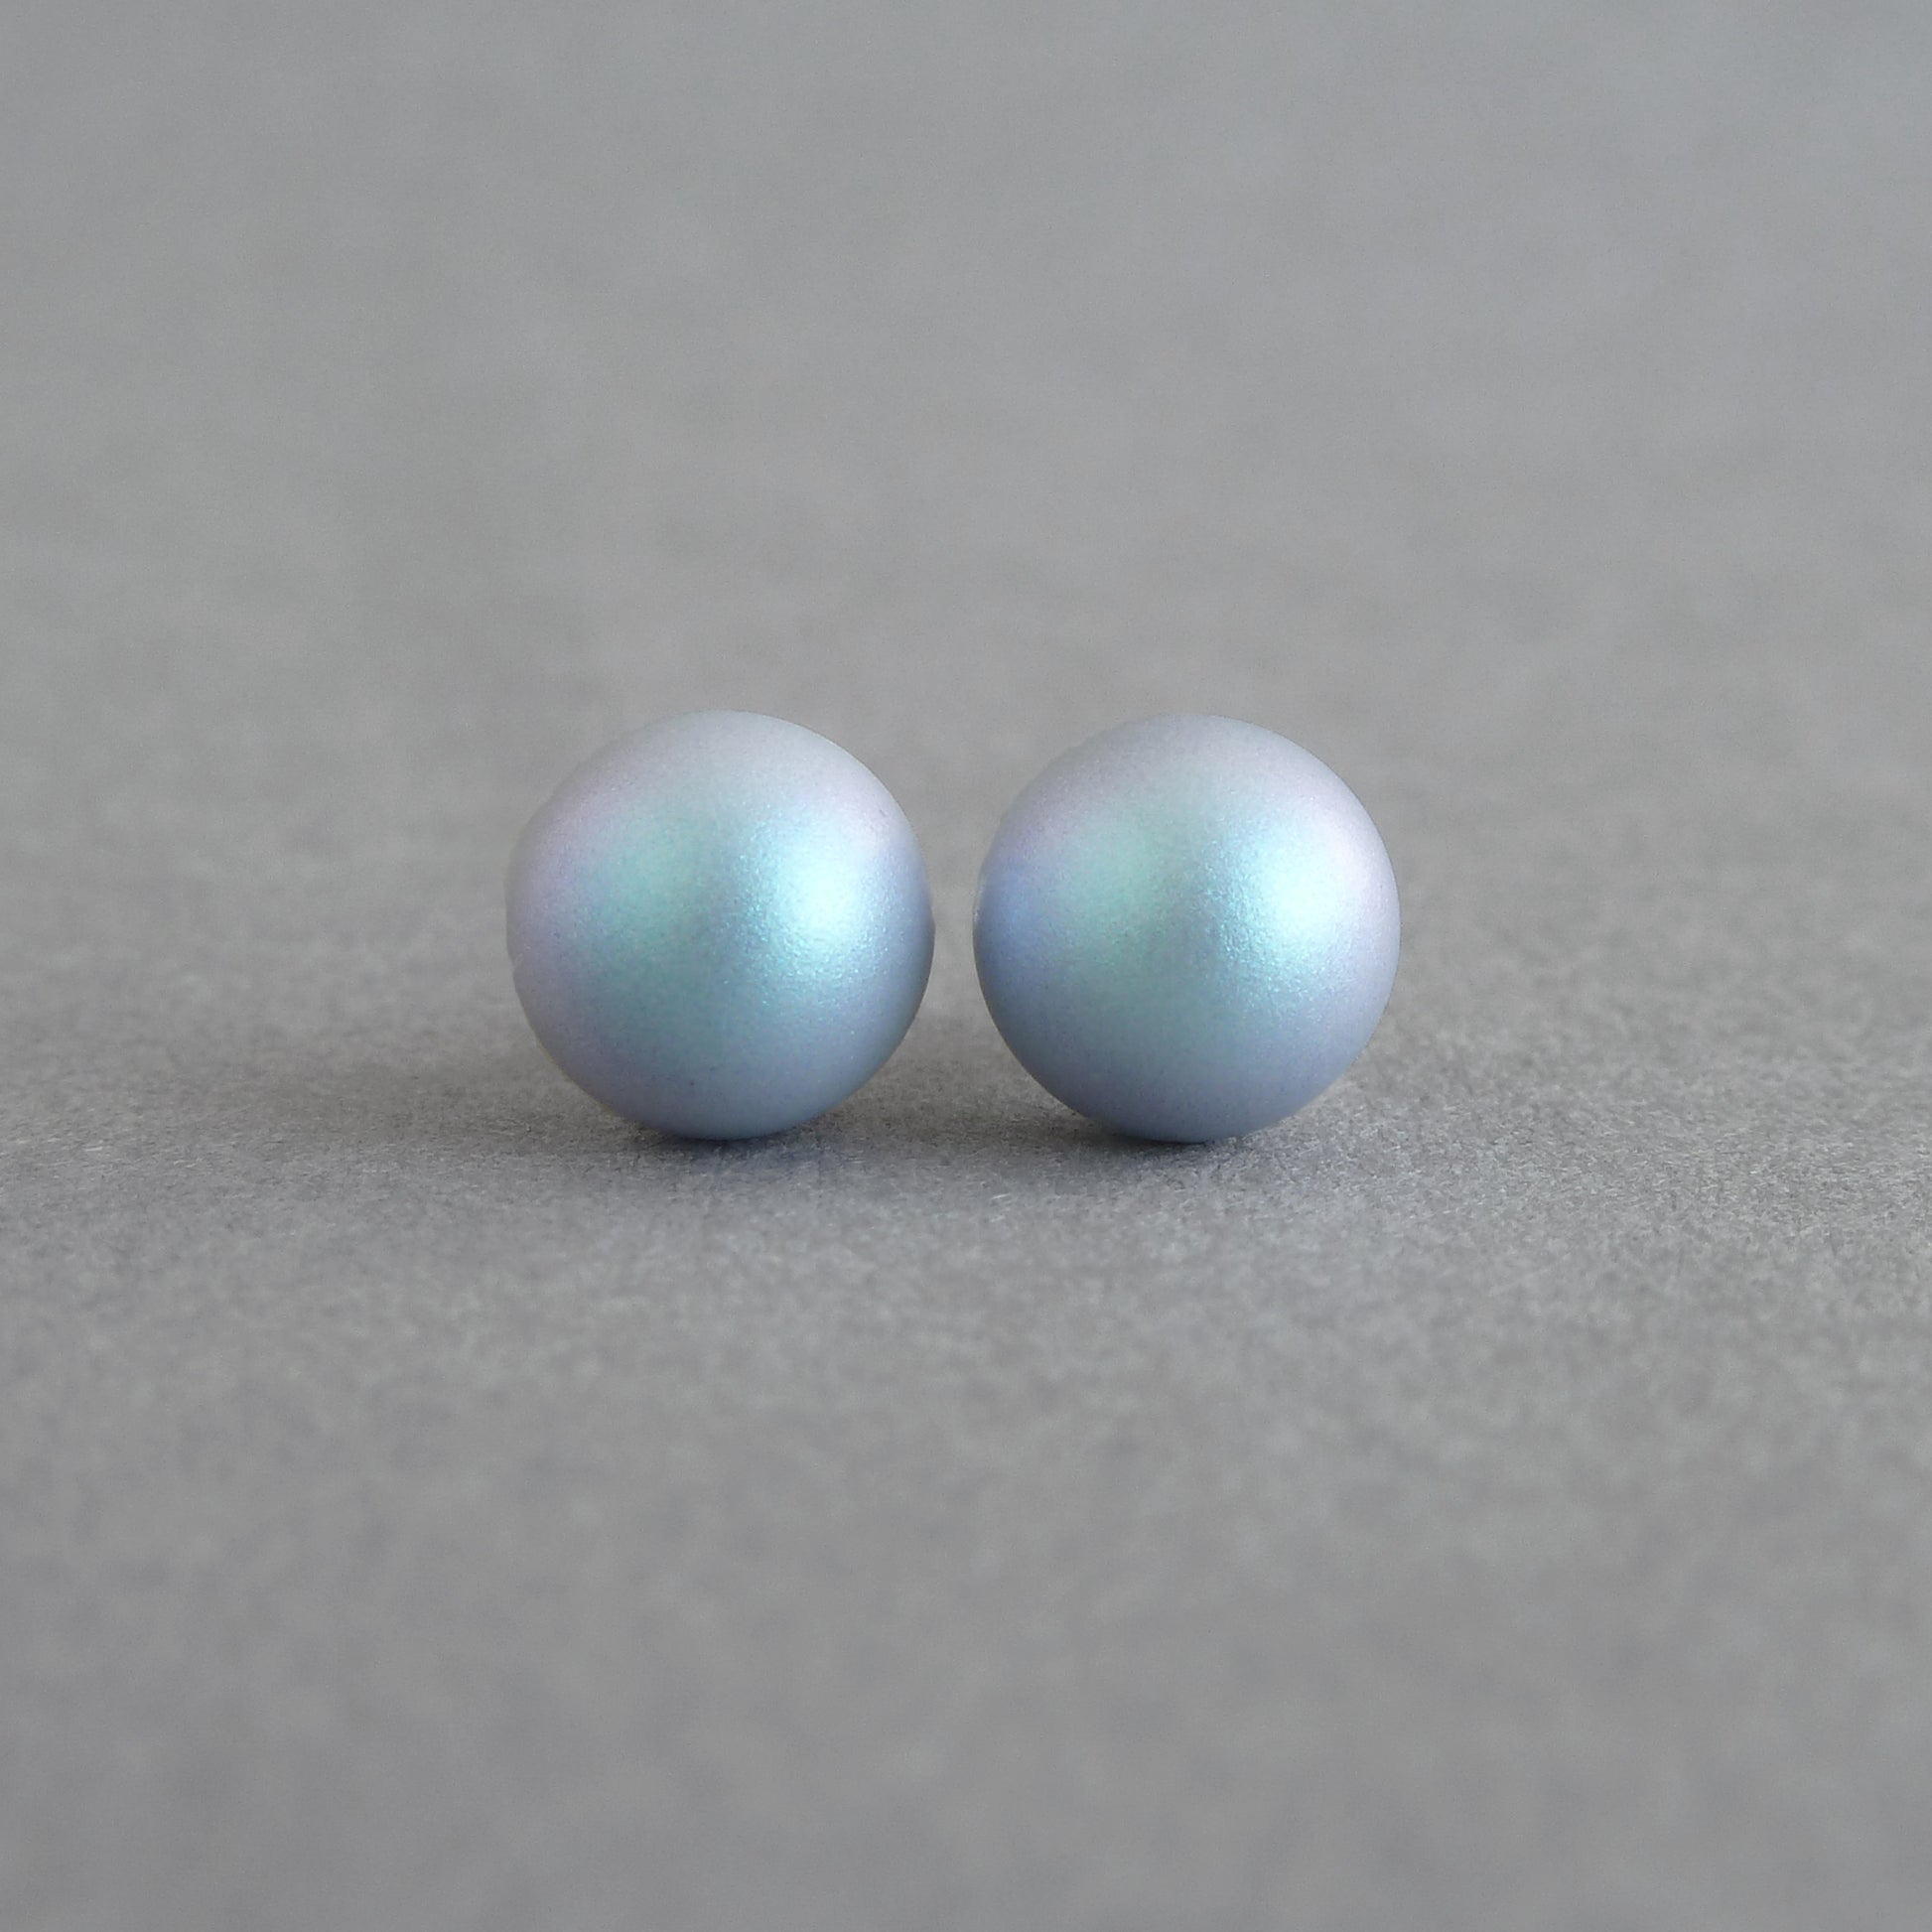 8mm iridescent light blue stud earrings